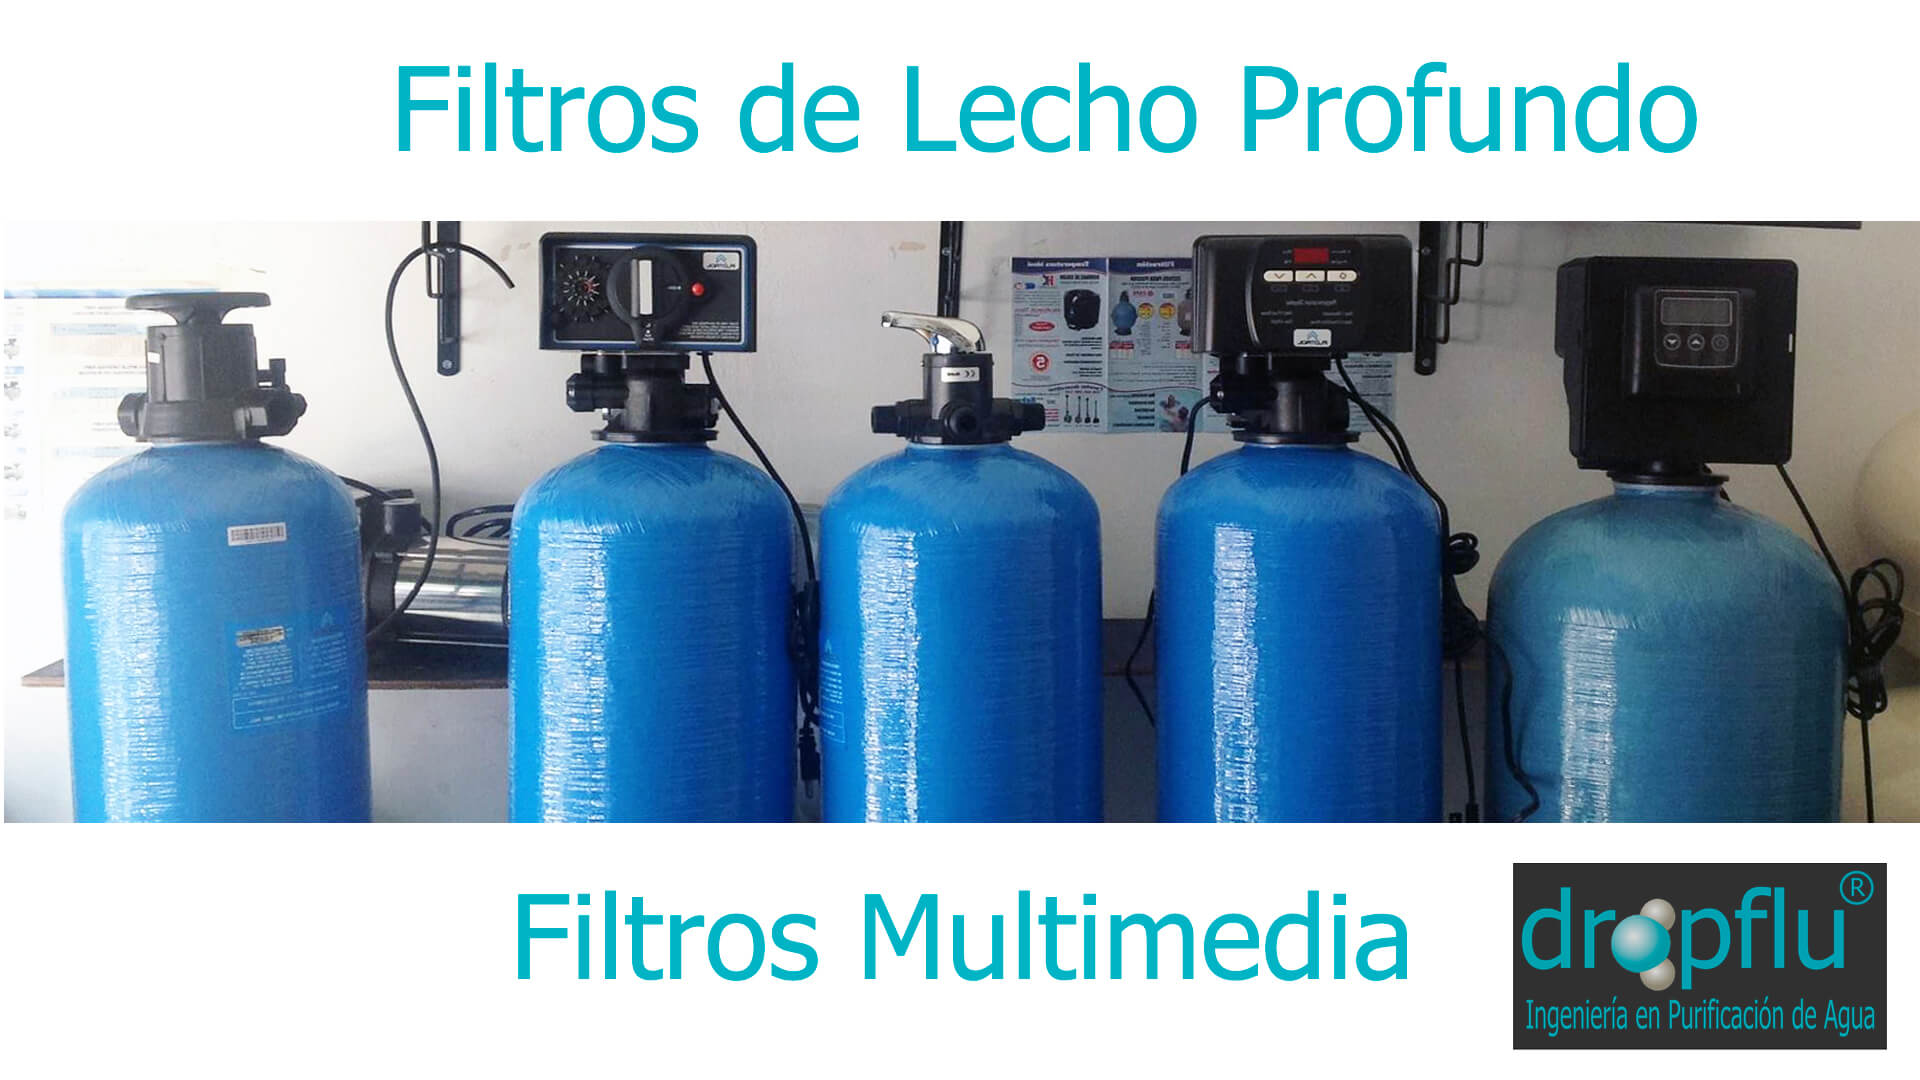 Medios filtrantes para retirar sedimentos. - GUÍA DE PURIFICADORES DE AGUA